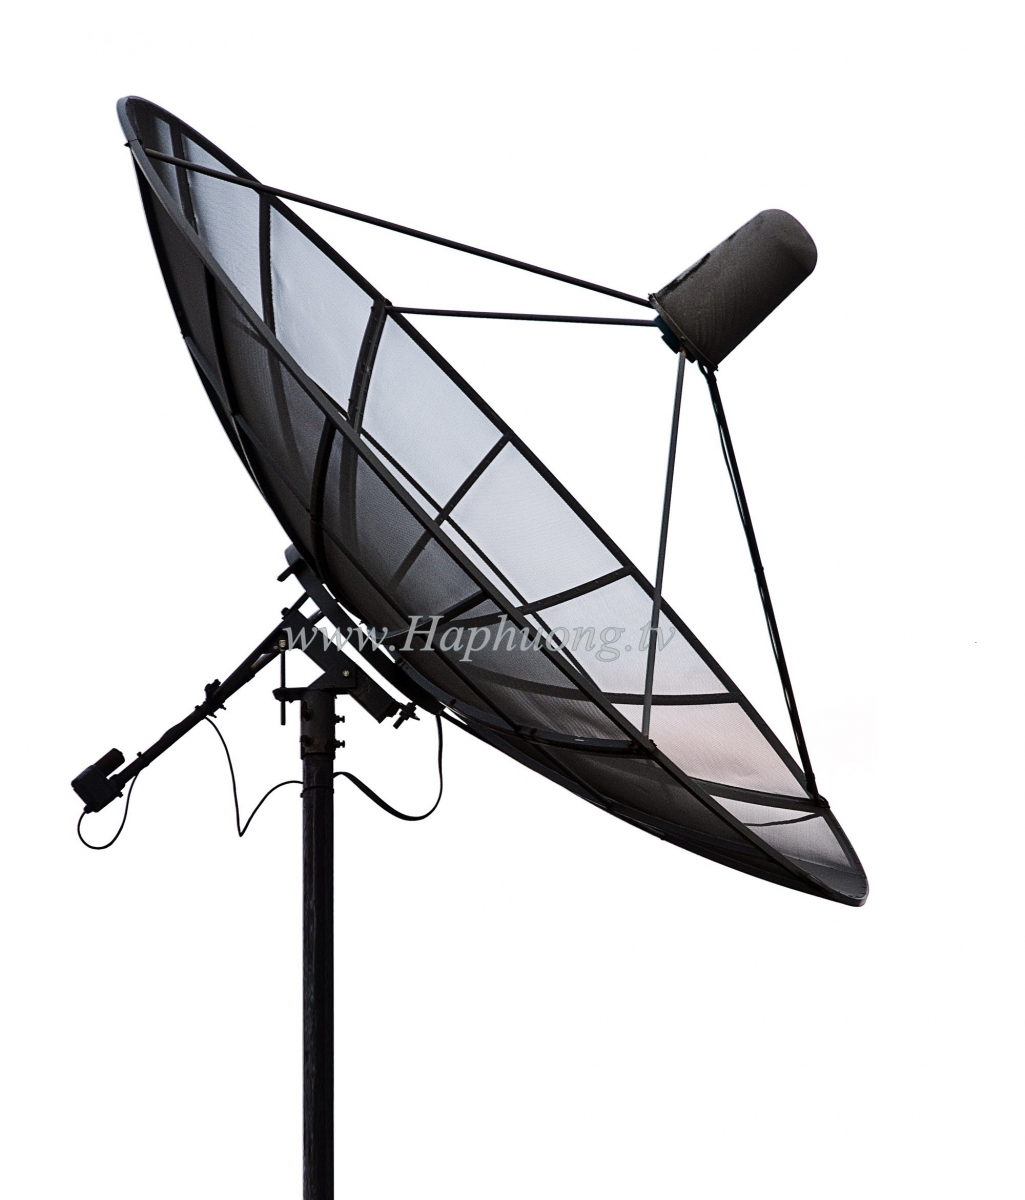 anten comstar st 10 - 3.0m